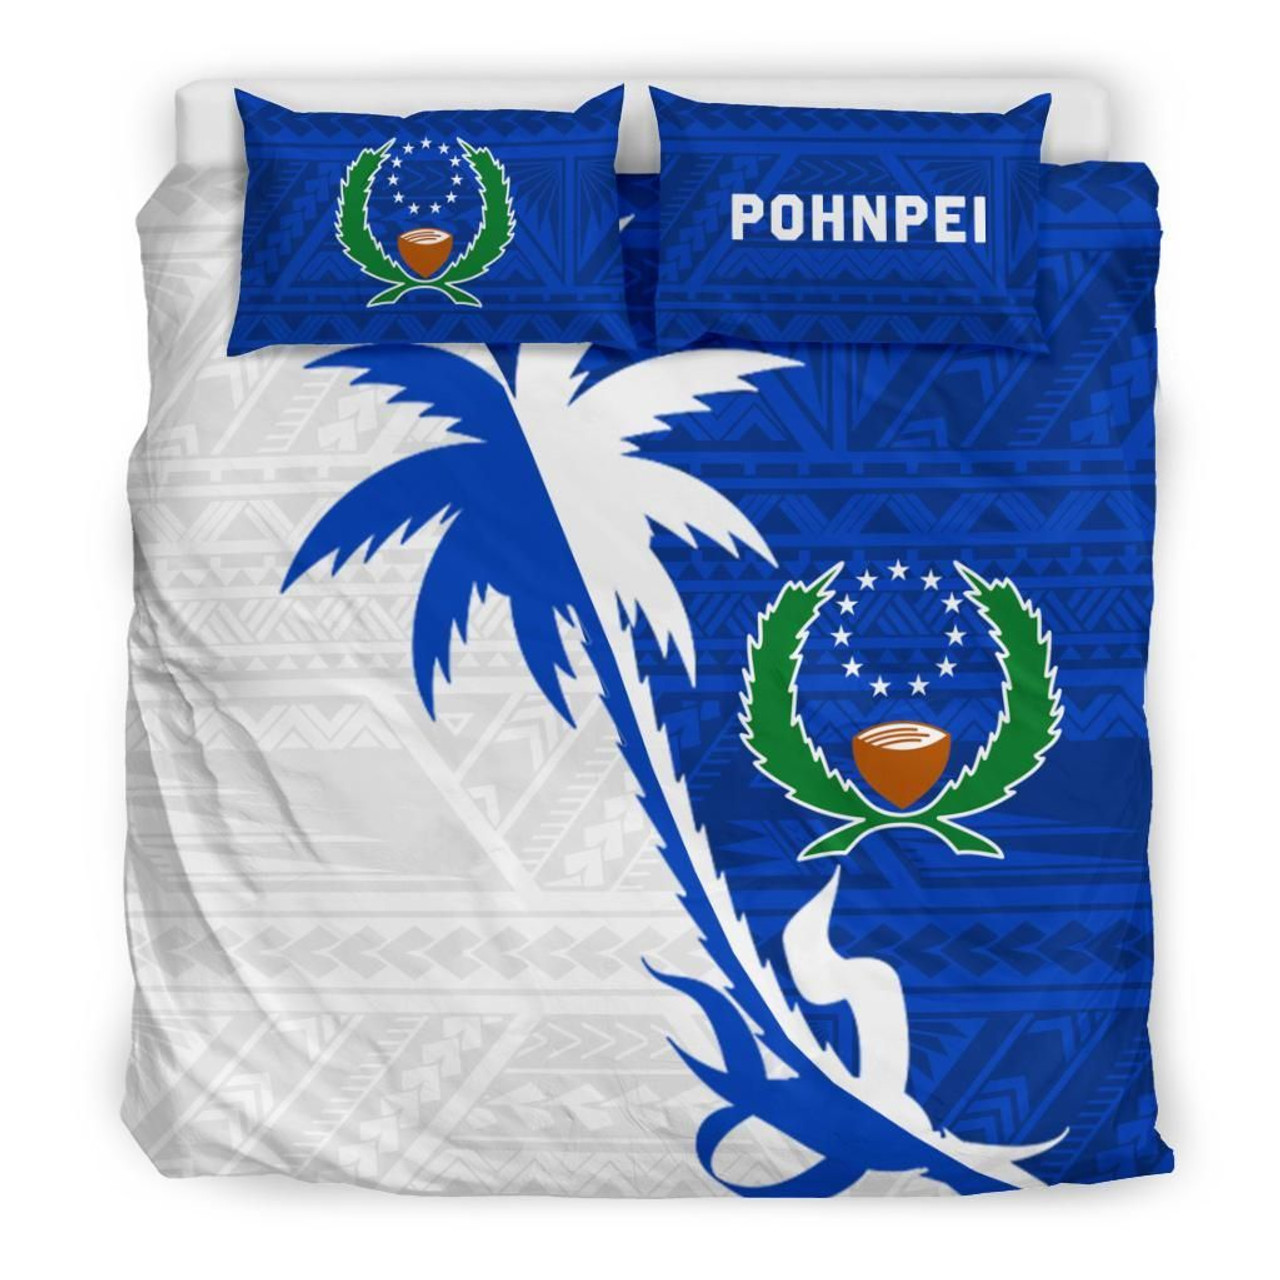 Pohnpei Duvet Cover Set - Pohnpei Flag & Coconut Tree 1